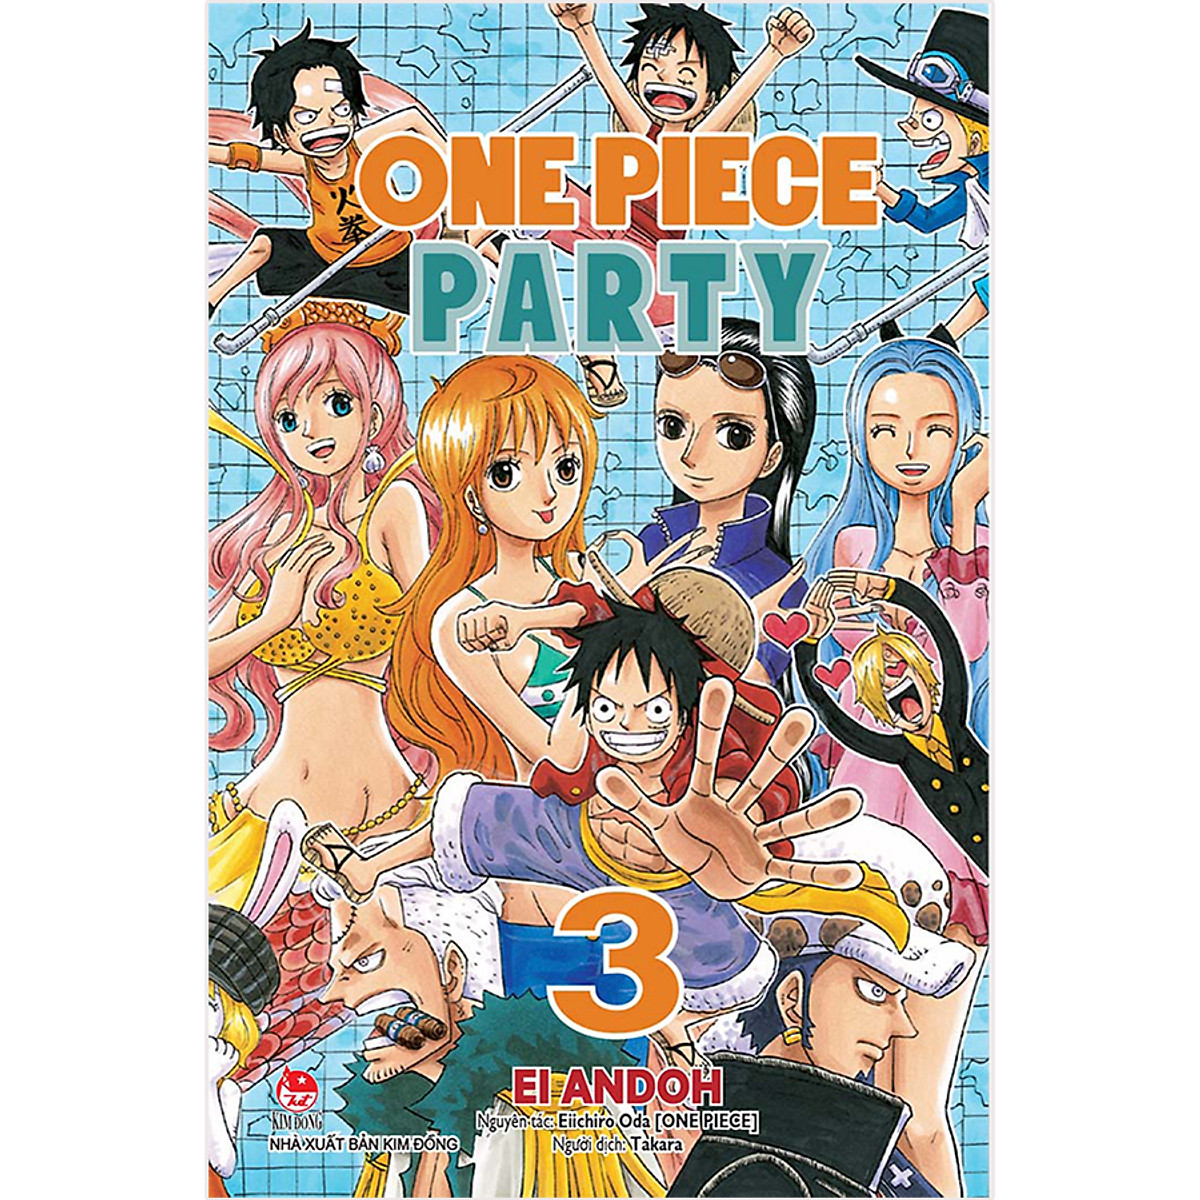 One Piece Party Tập 3 (Tái Bản 2020)